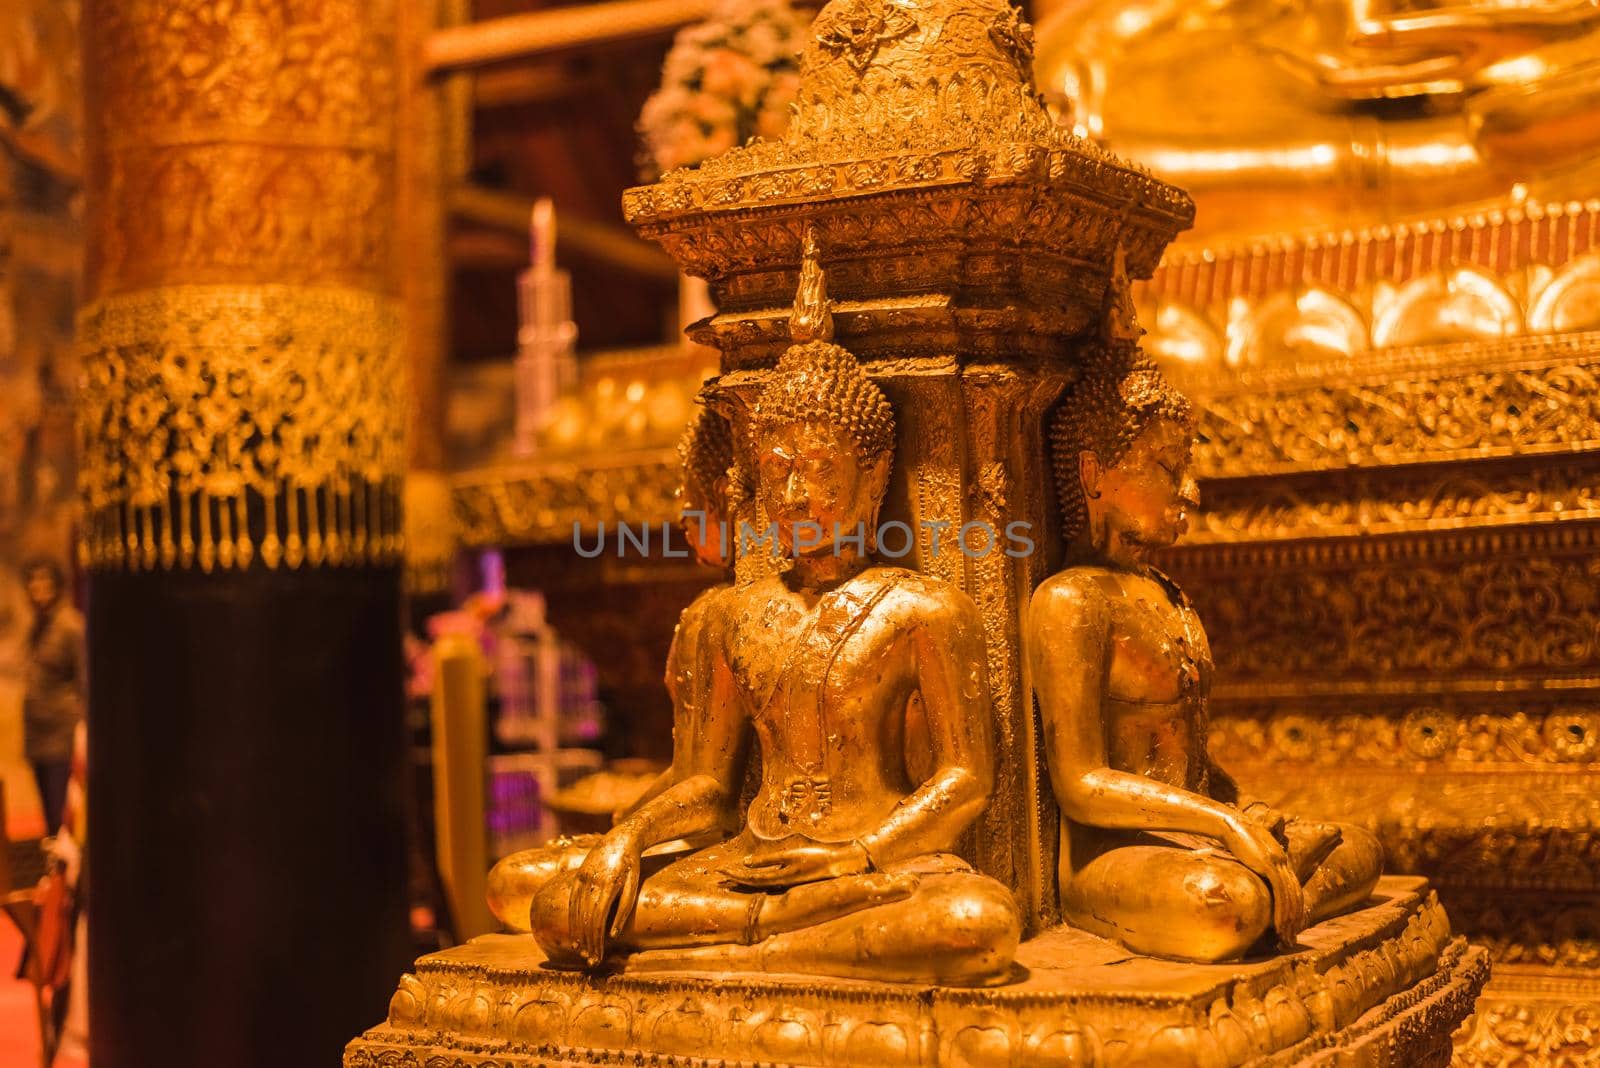 golden buddha image in Wat Phumin in Nan, Thailand